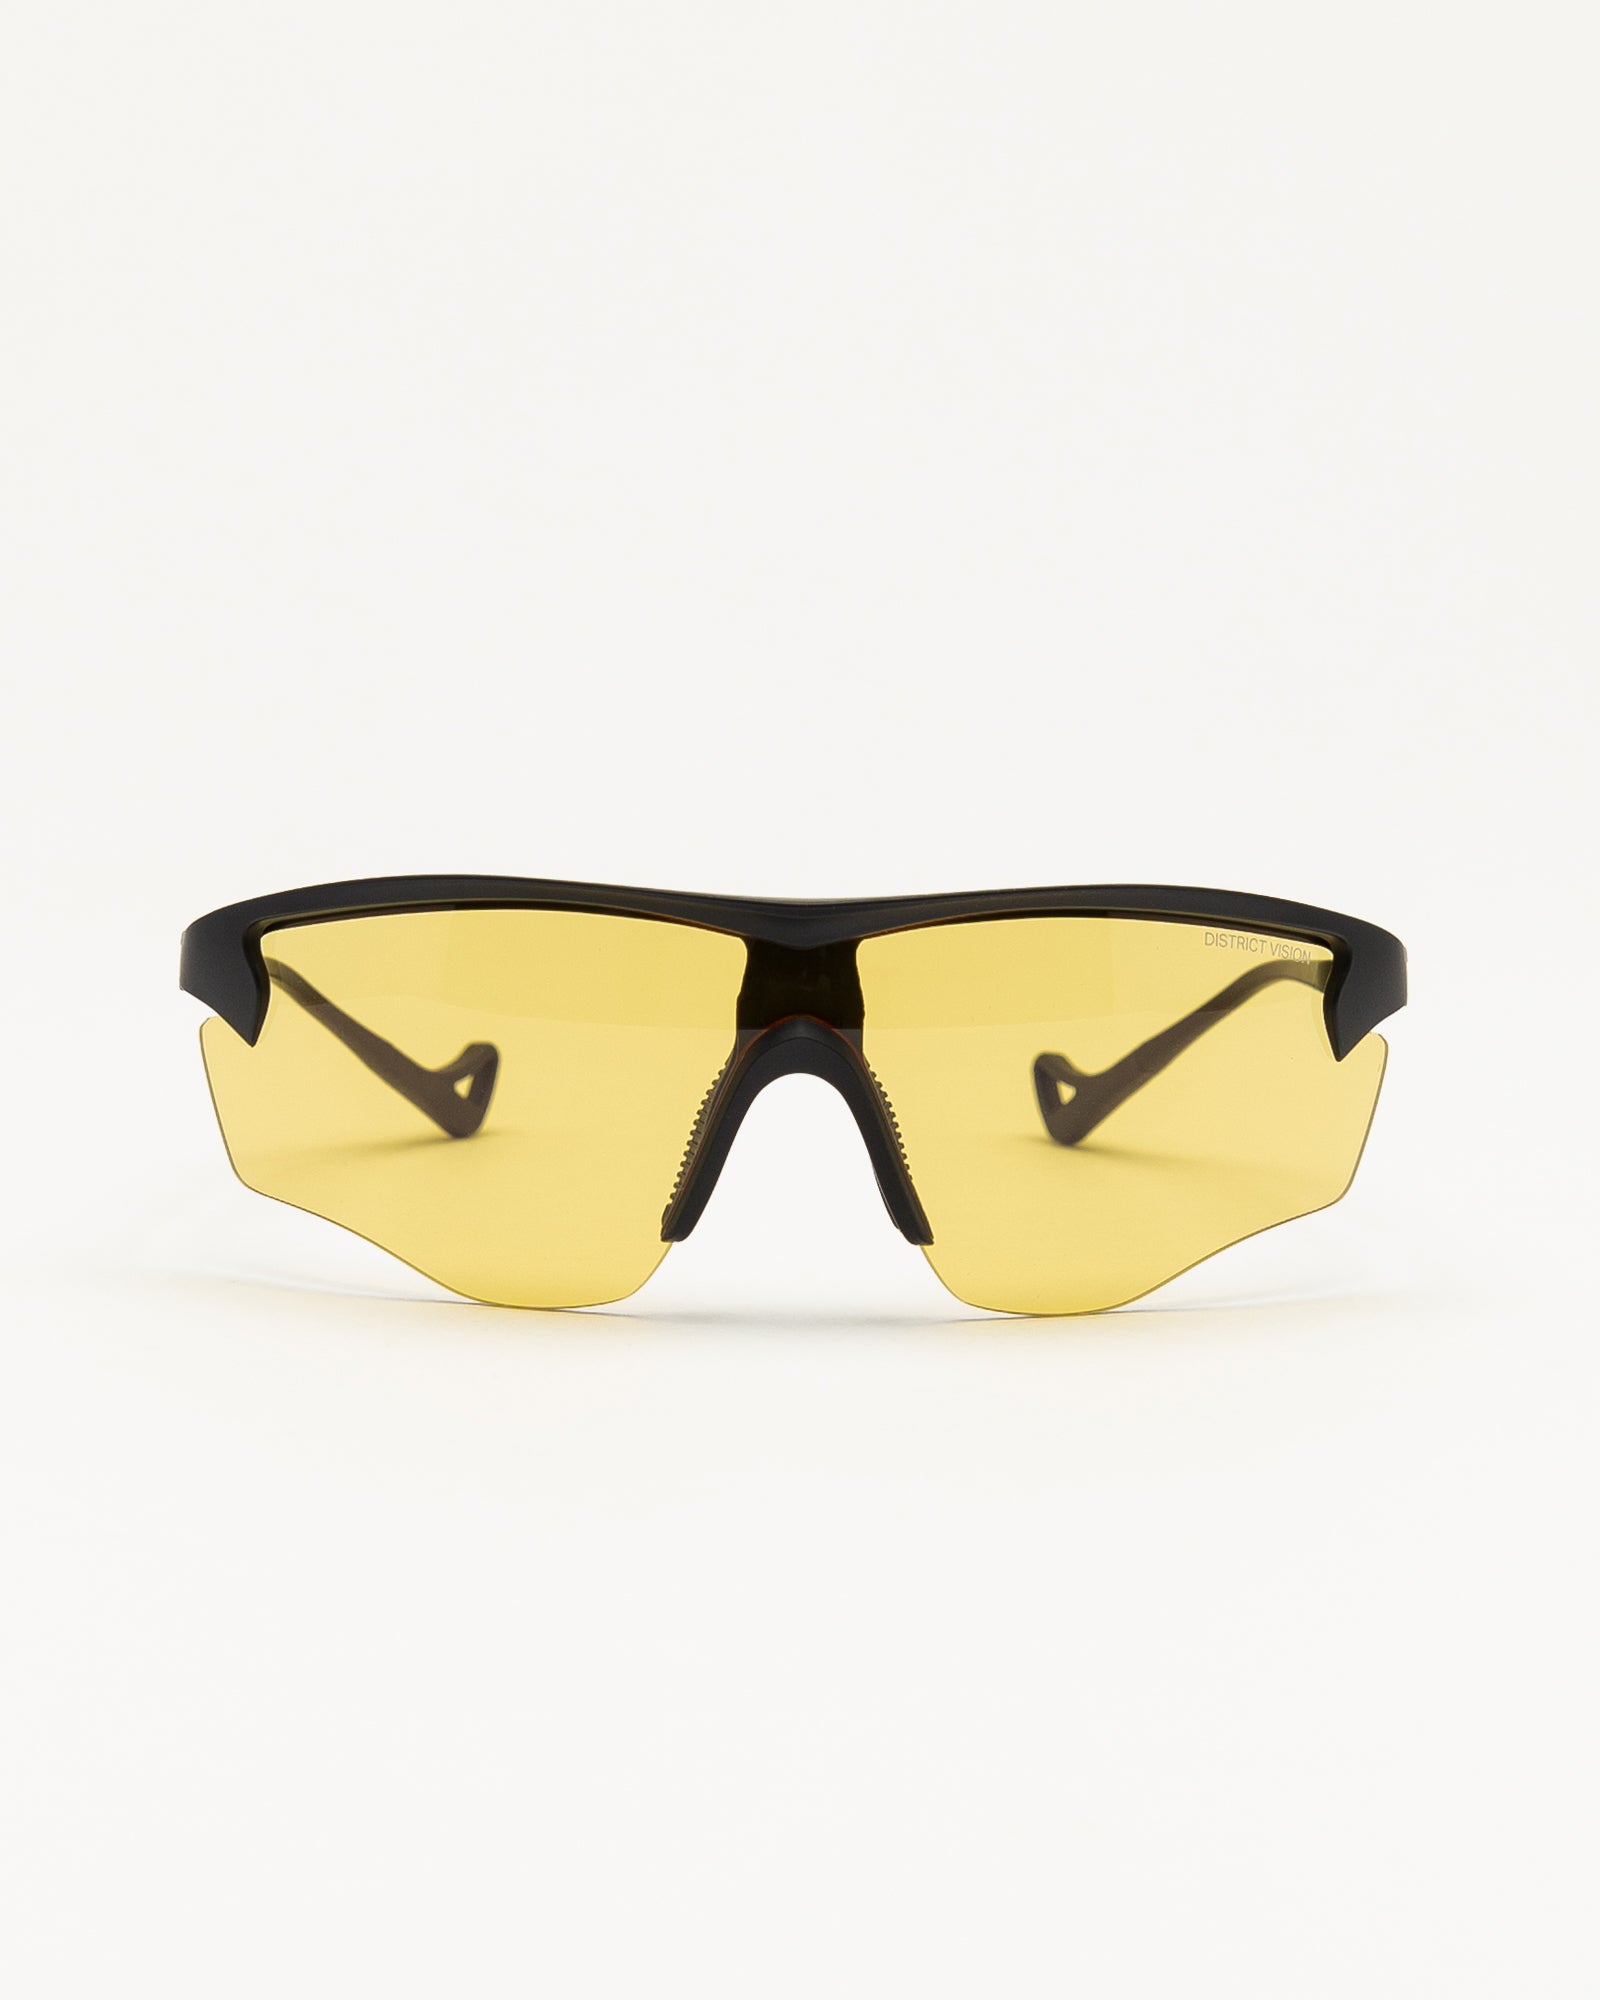 Junya Racer Sunglasses in Black/Yellow